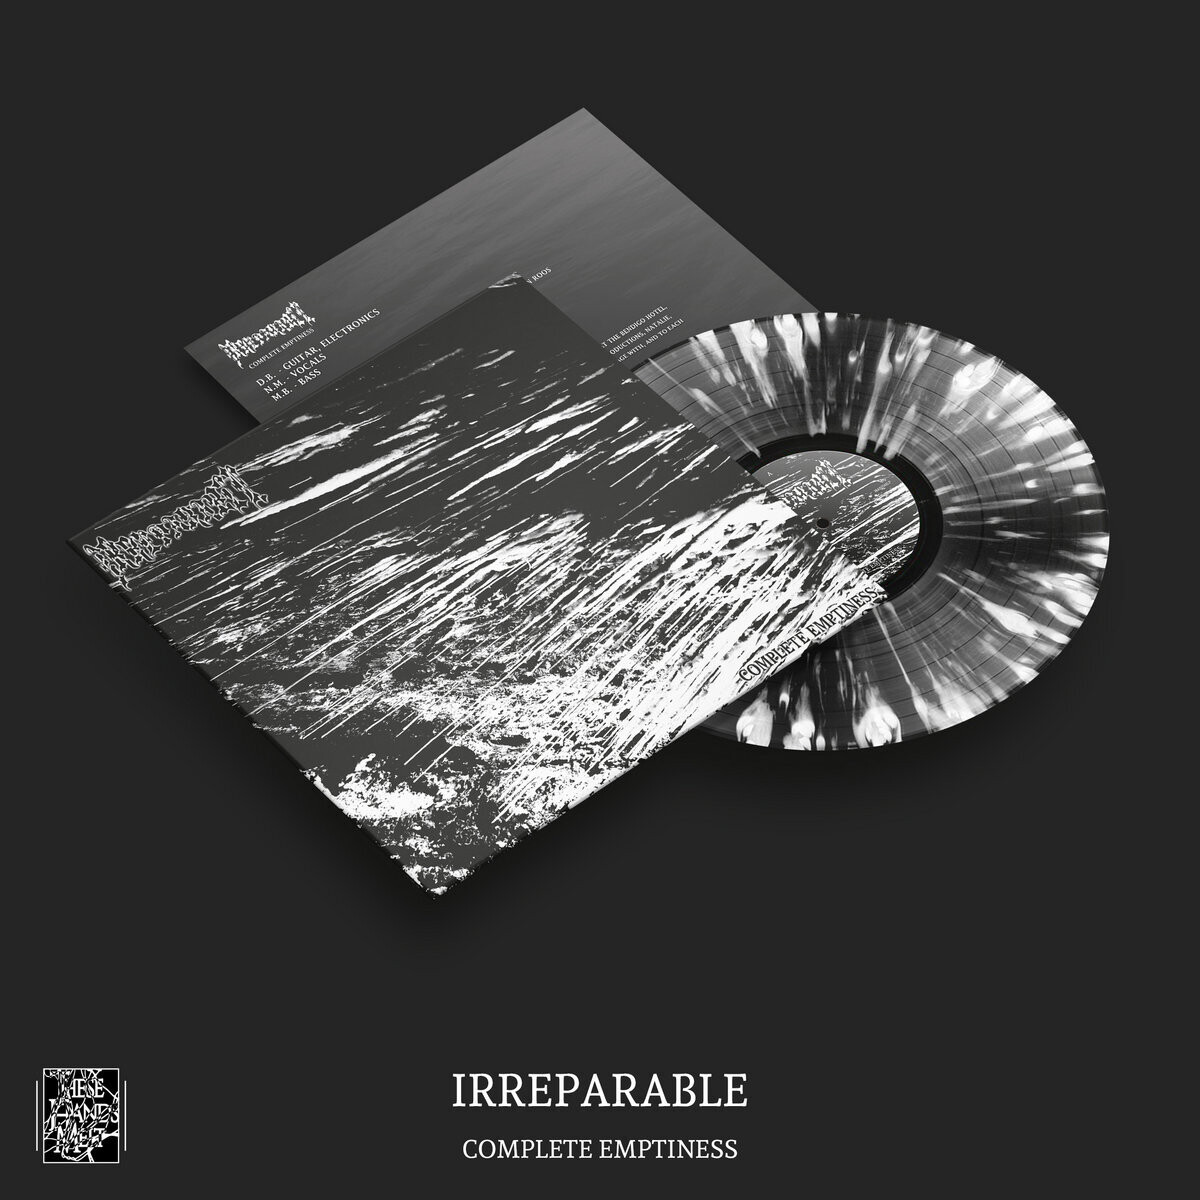 Irreparable - "Complete Emptiness" [Vinyl LP]